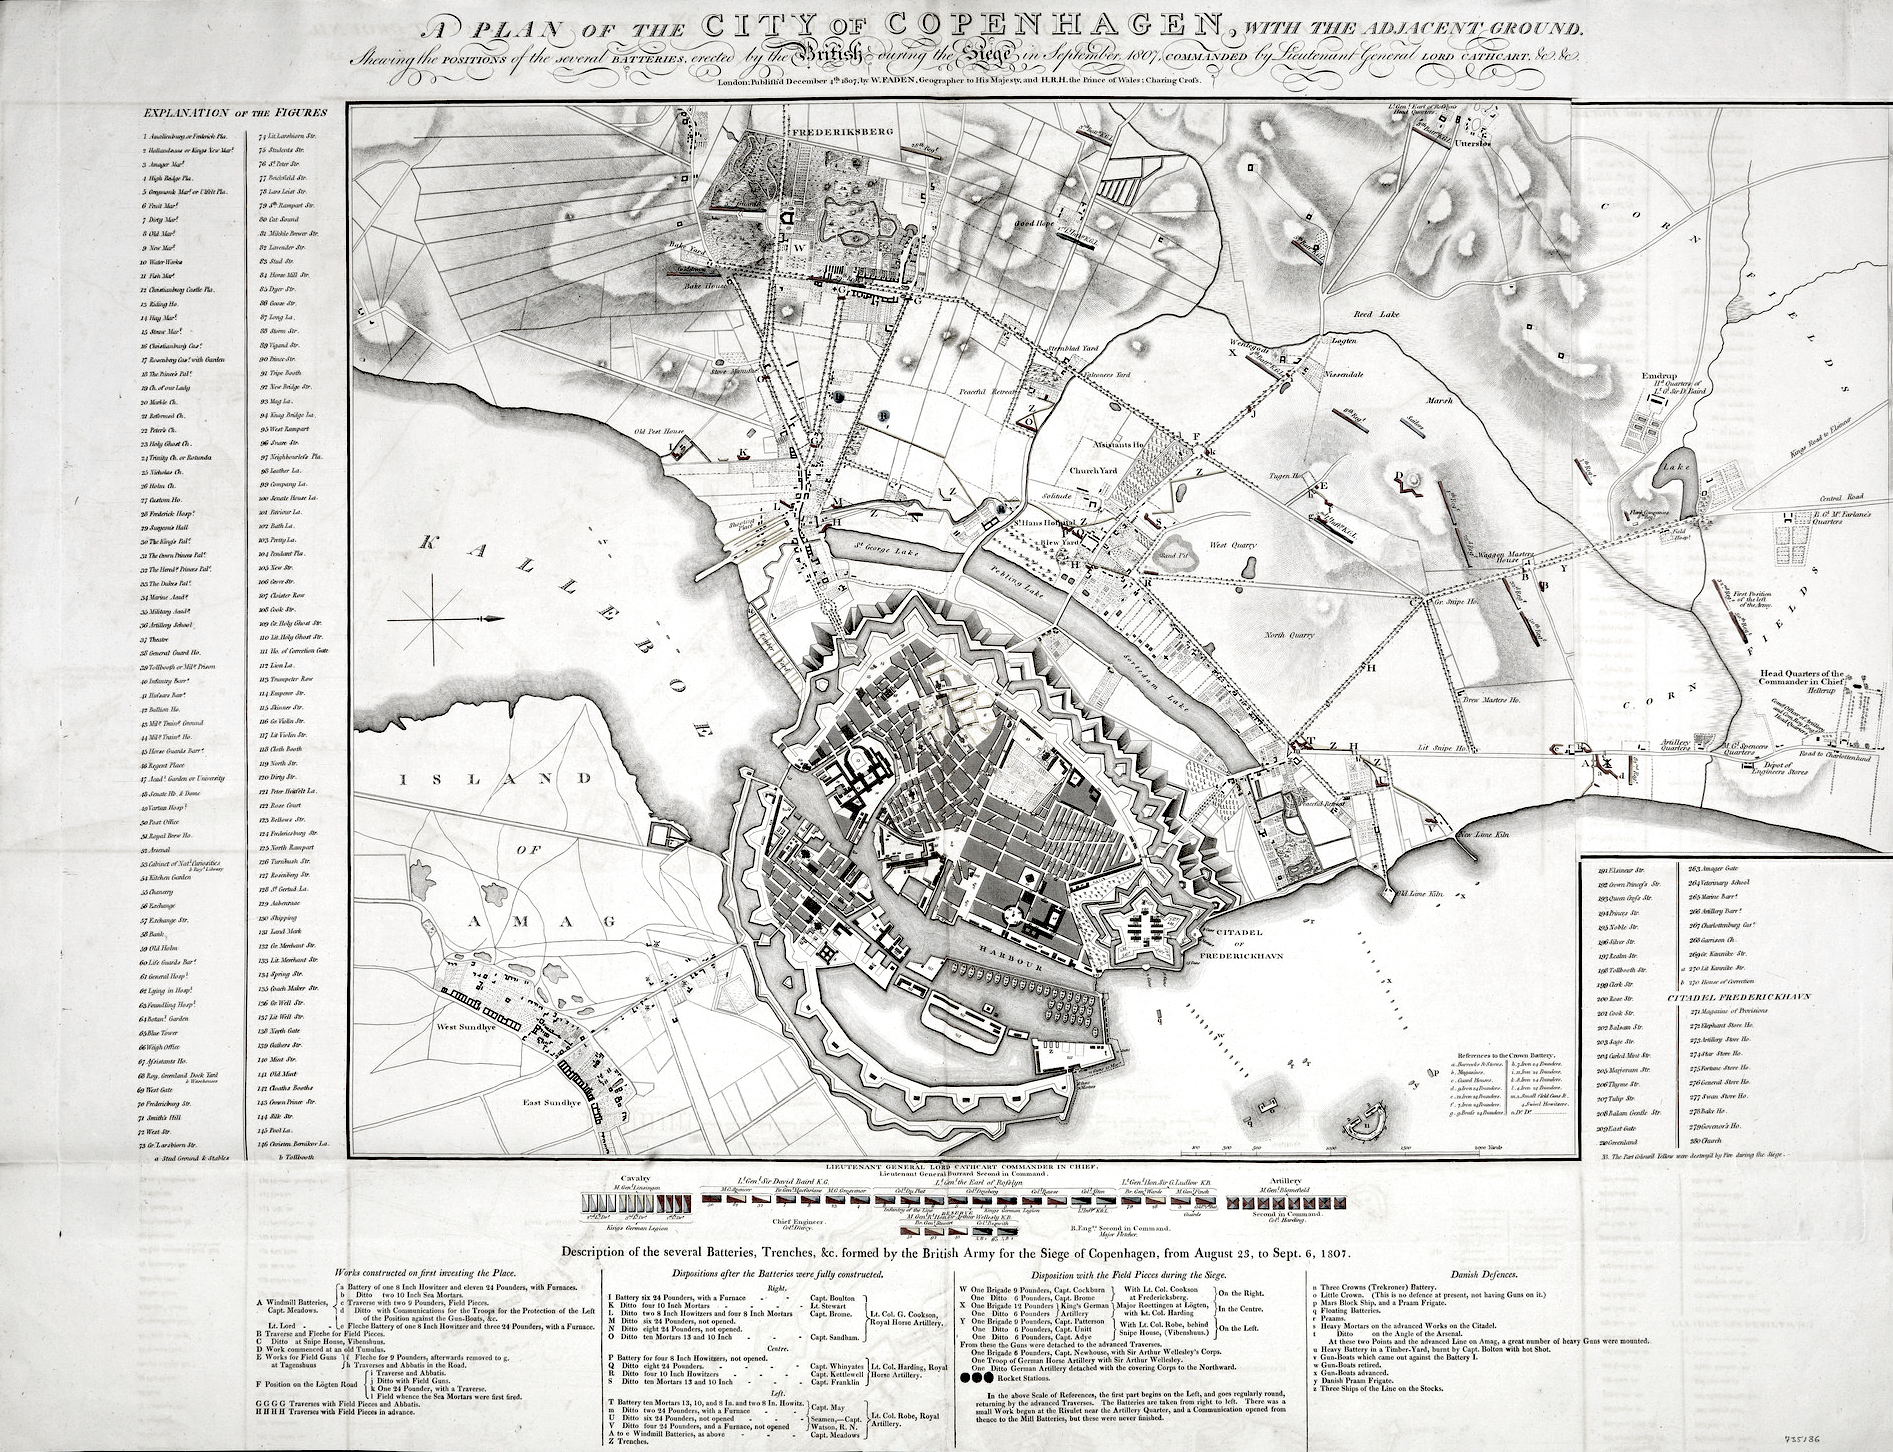 Koppenhága térképe 1807-ből. A térképen az ostromló angol csapatok felállása is látható.